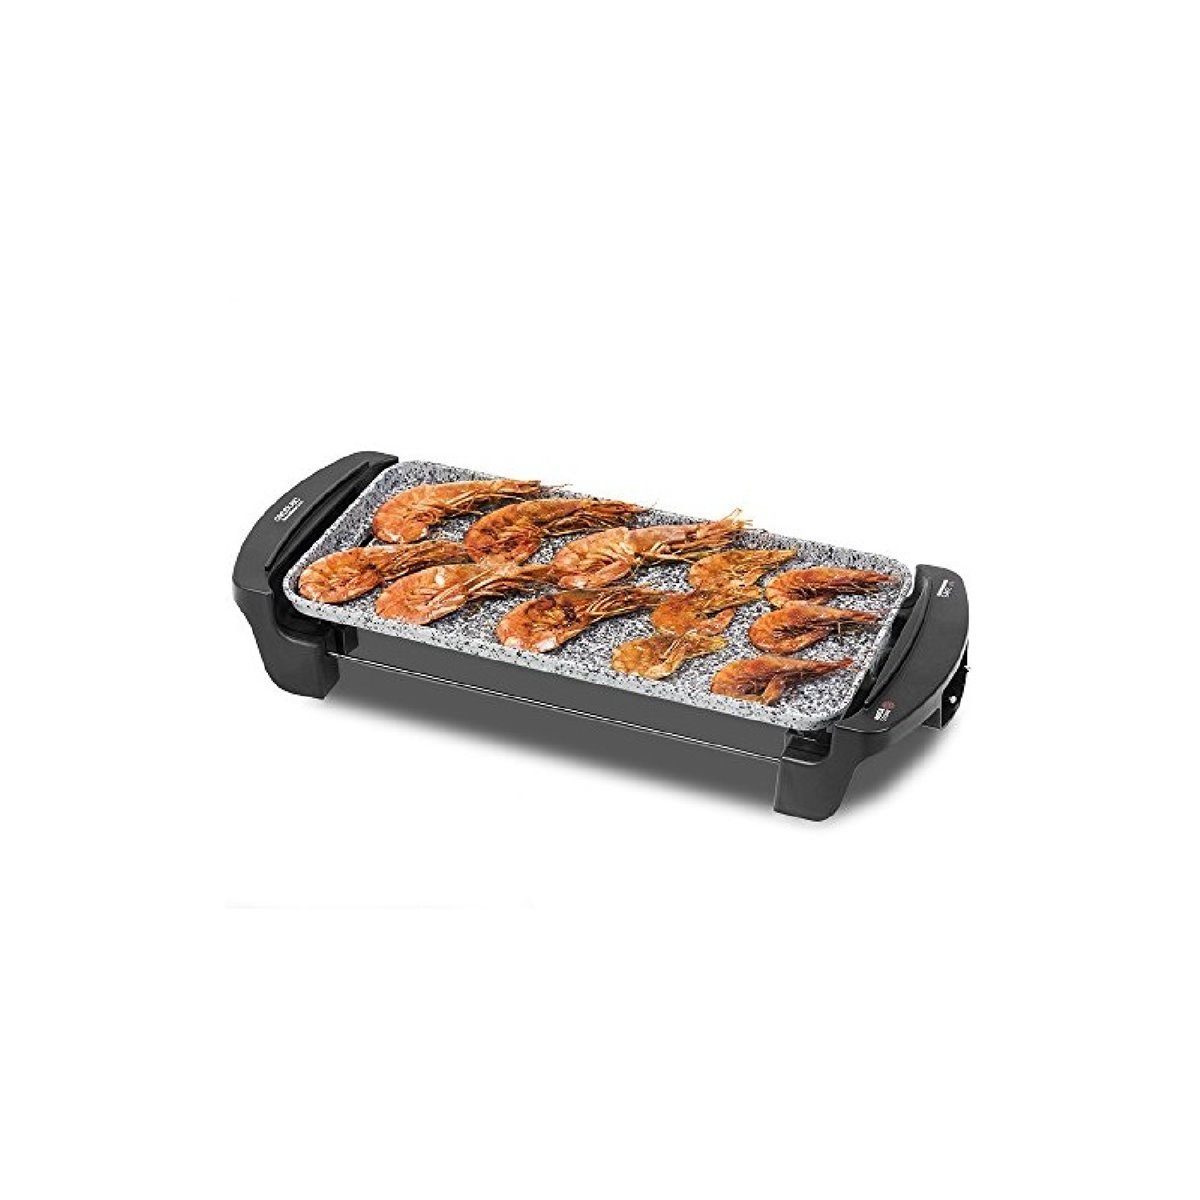 Plancha eléctrica Tasty&Grill 3000 BlackWater Cecotec - Conforama